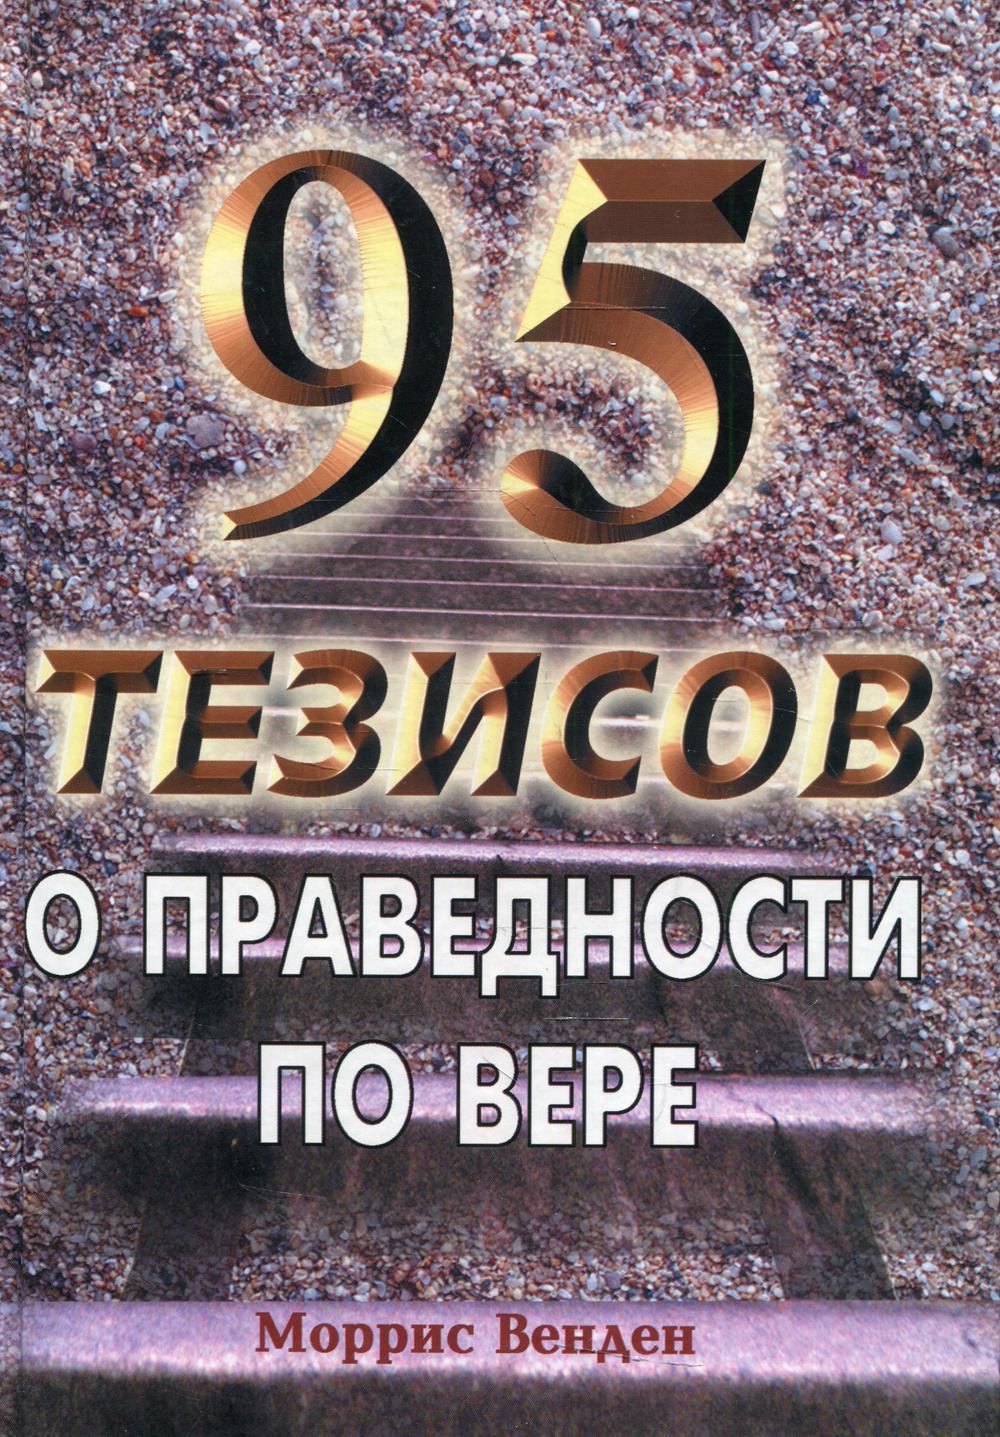 95     